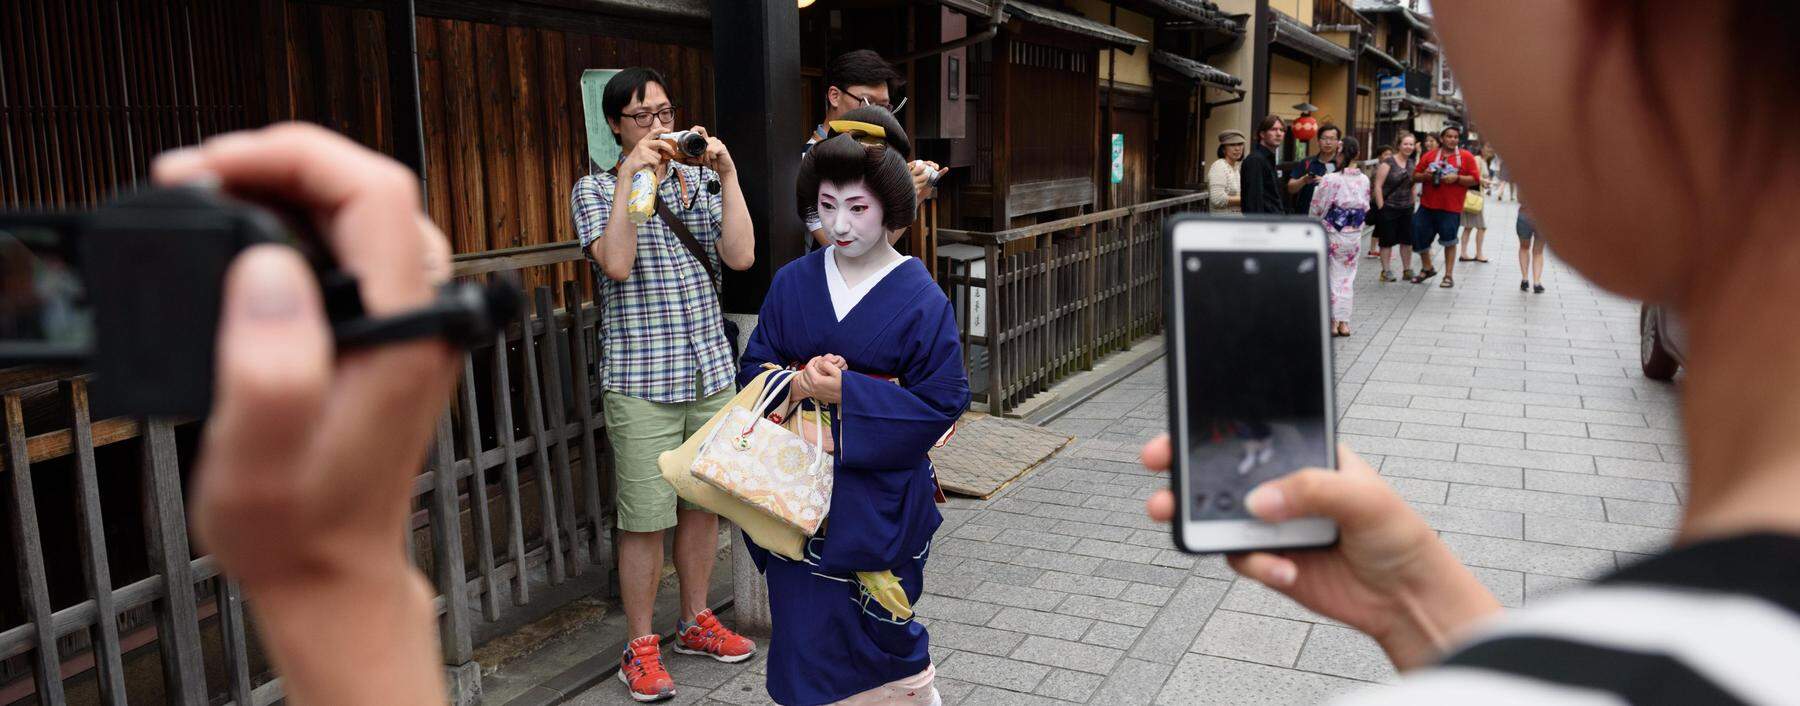 Die Geisha-Künstlerinnen werden von Touristen oft bedrängt und belästigt.